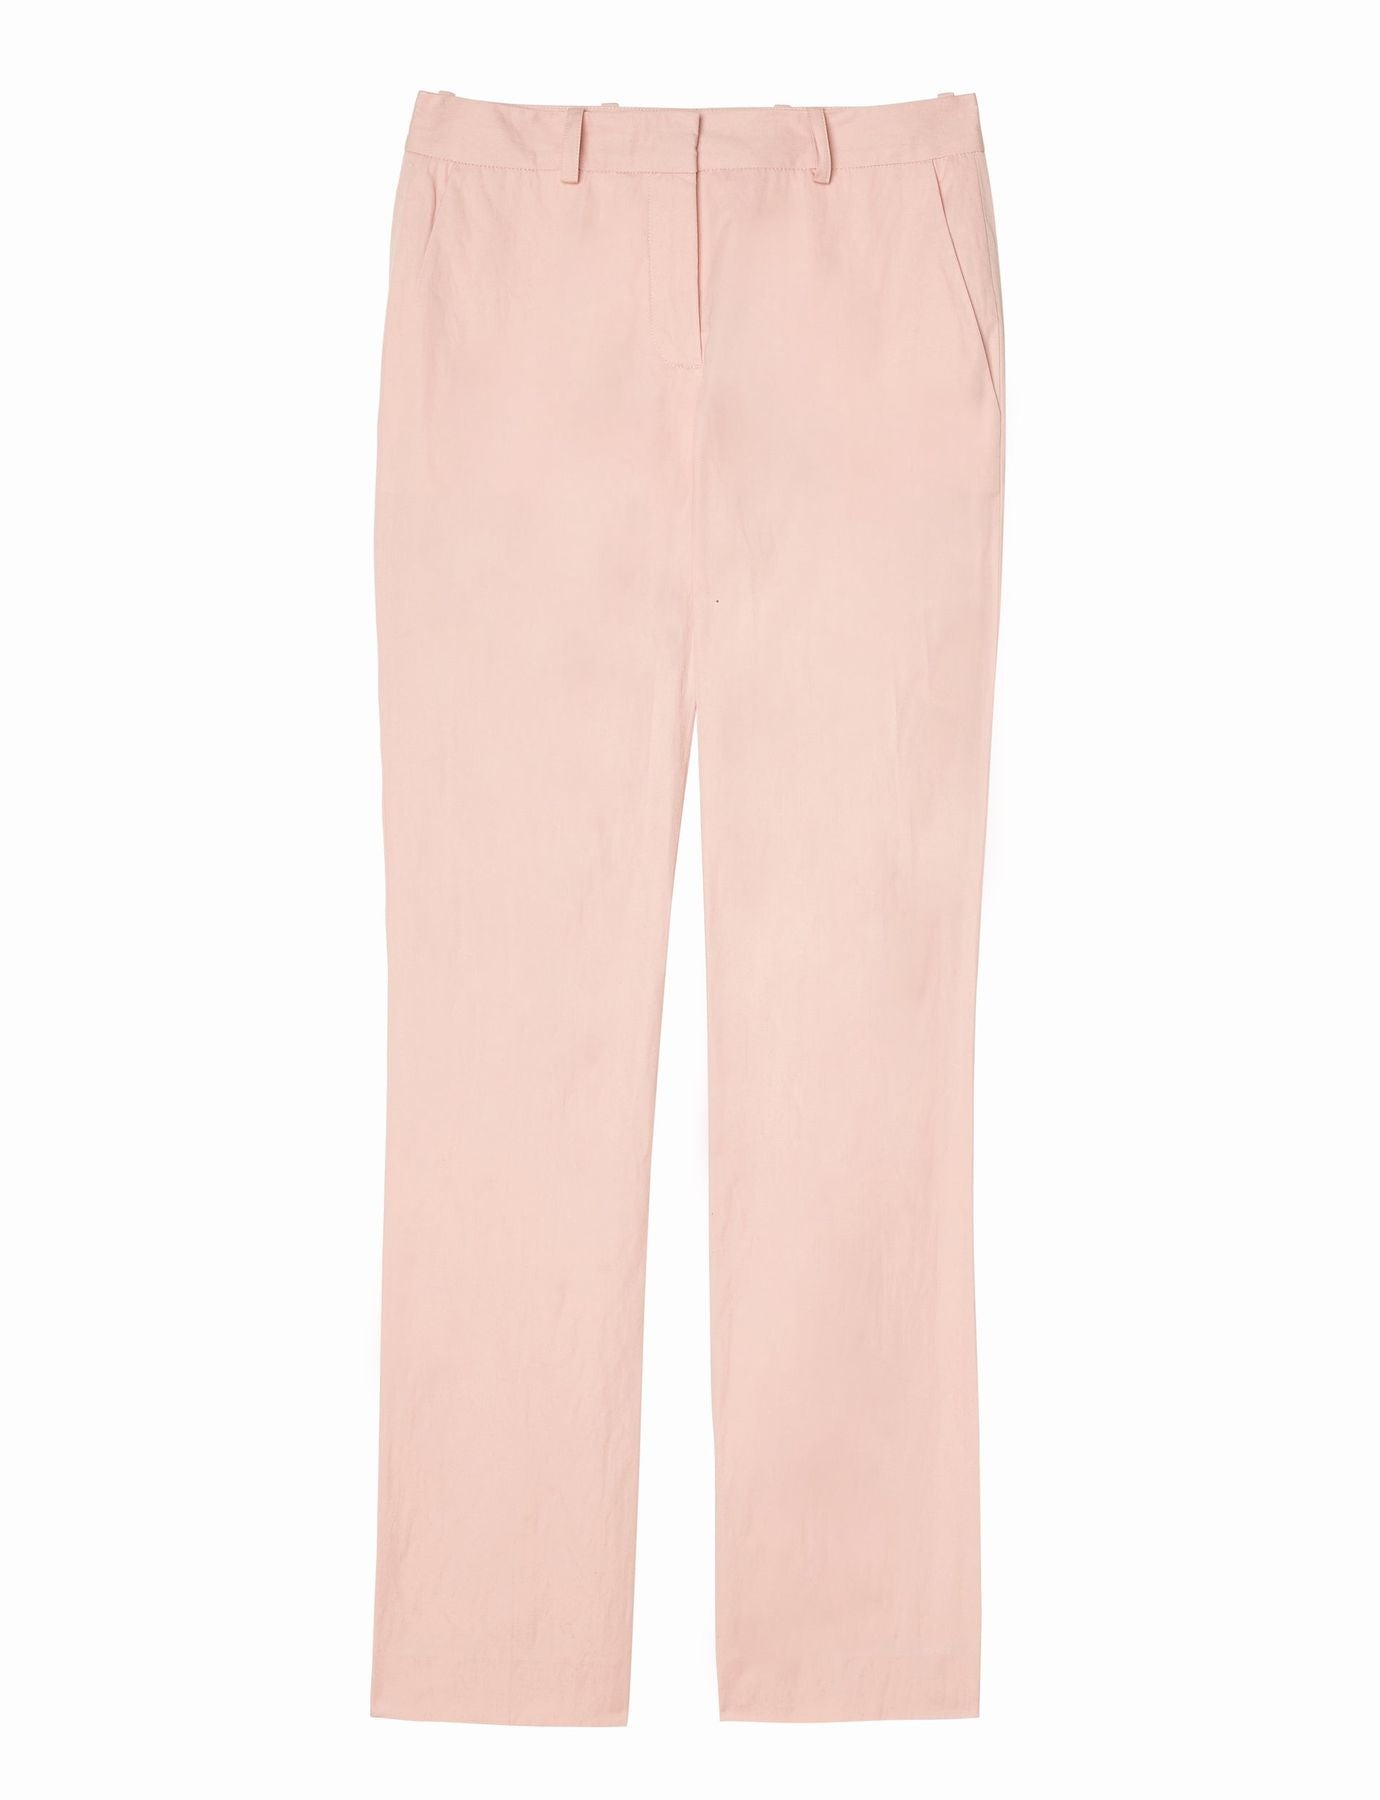 pants-anatole-pale pink